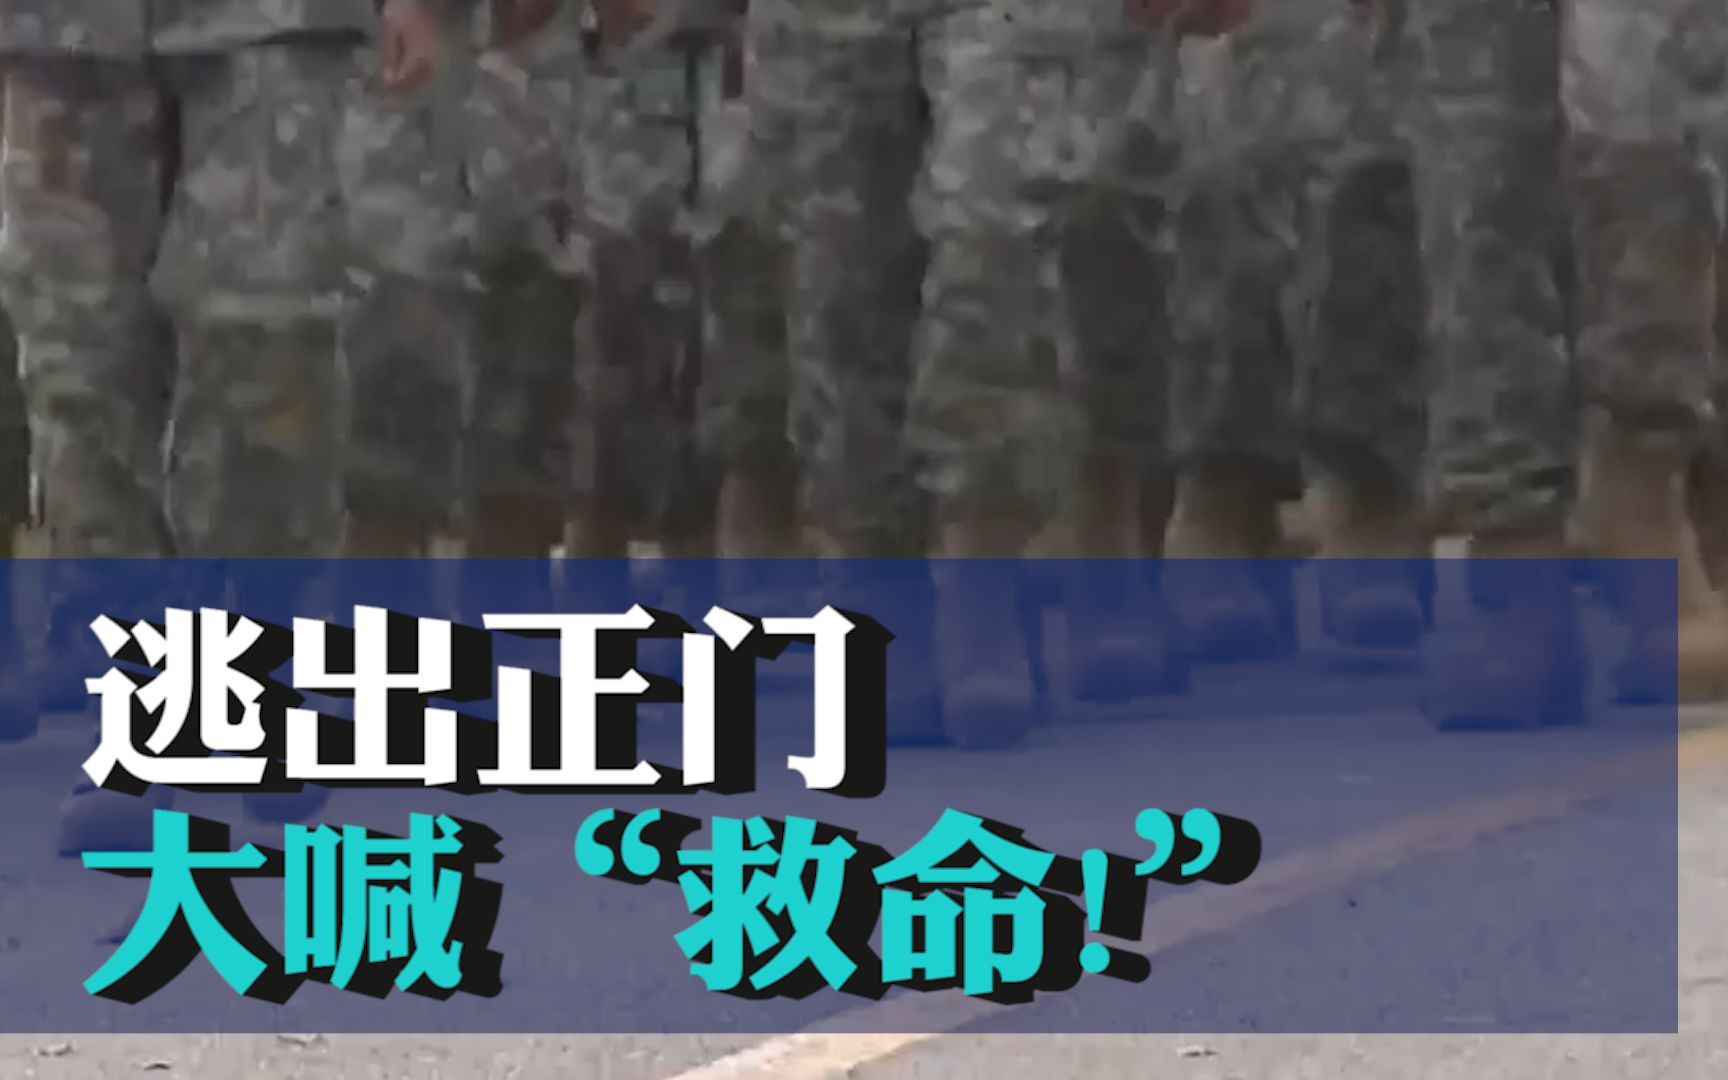 韩国女子在驻韩美军基地被性侵 逃出正门大喊“救命!”